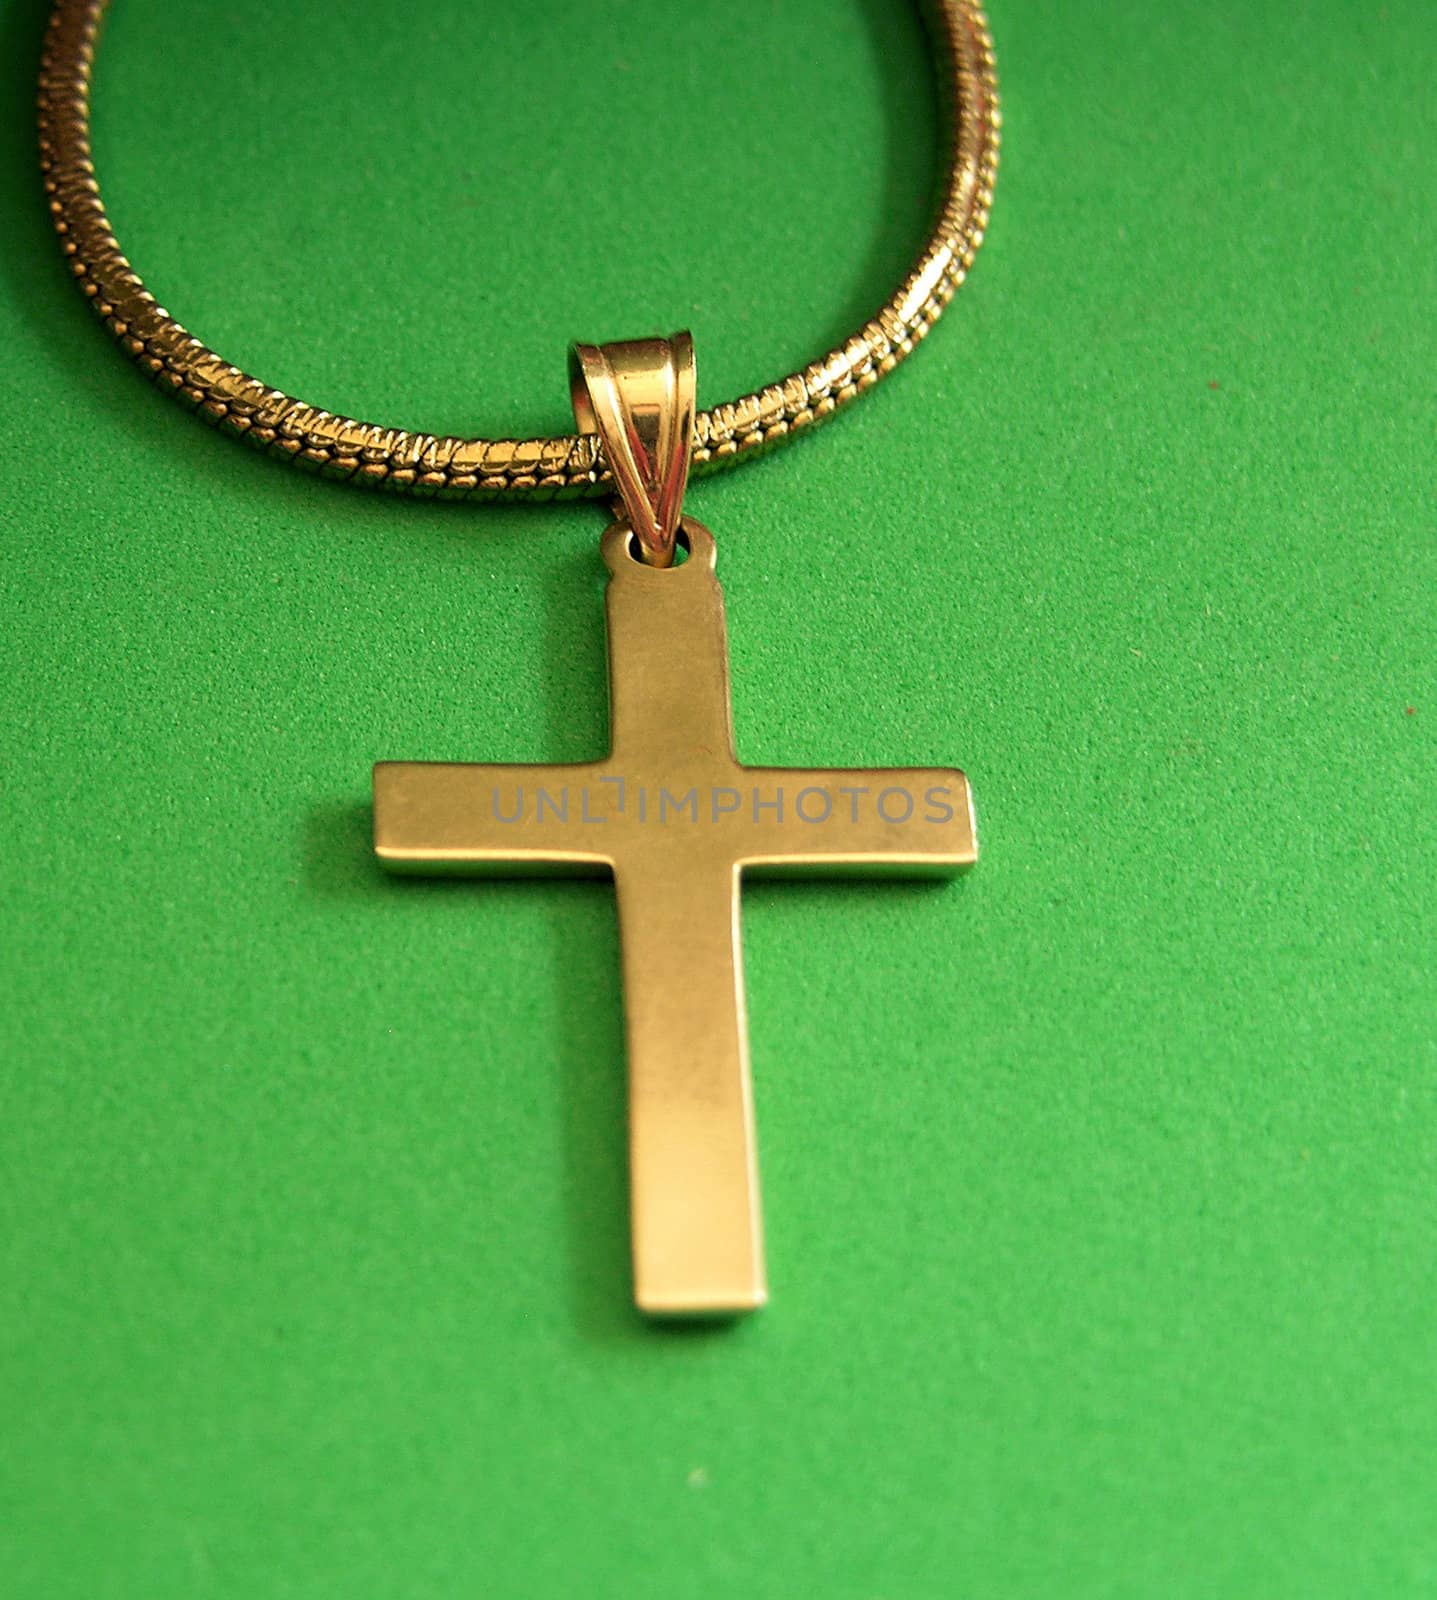           A gold cross seen up close on a green backgound